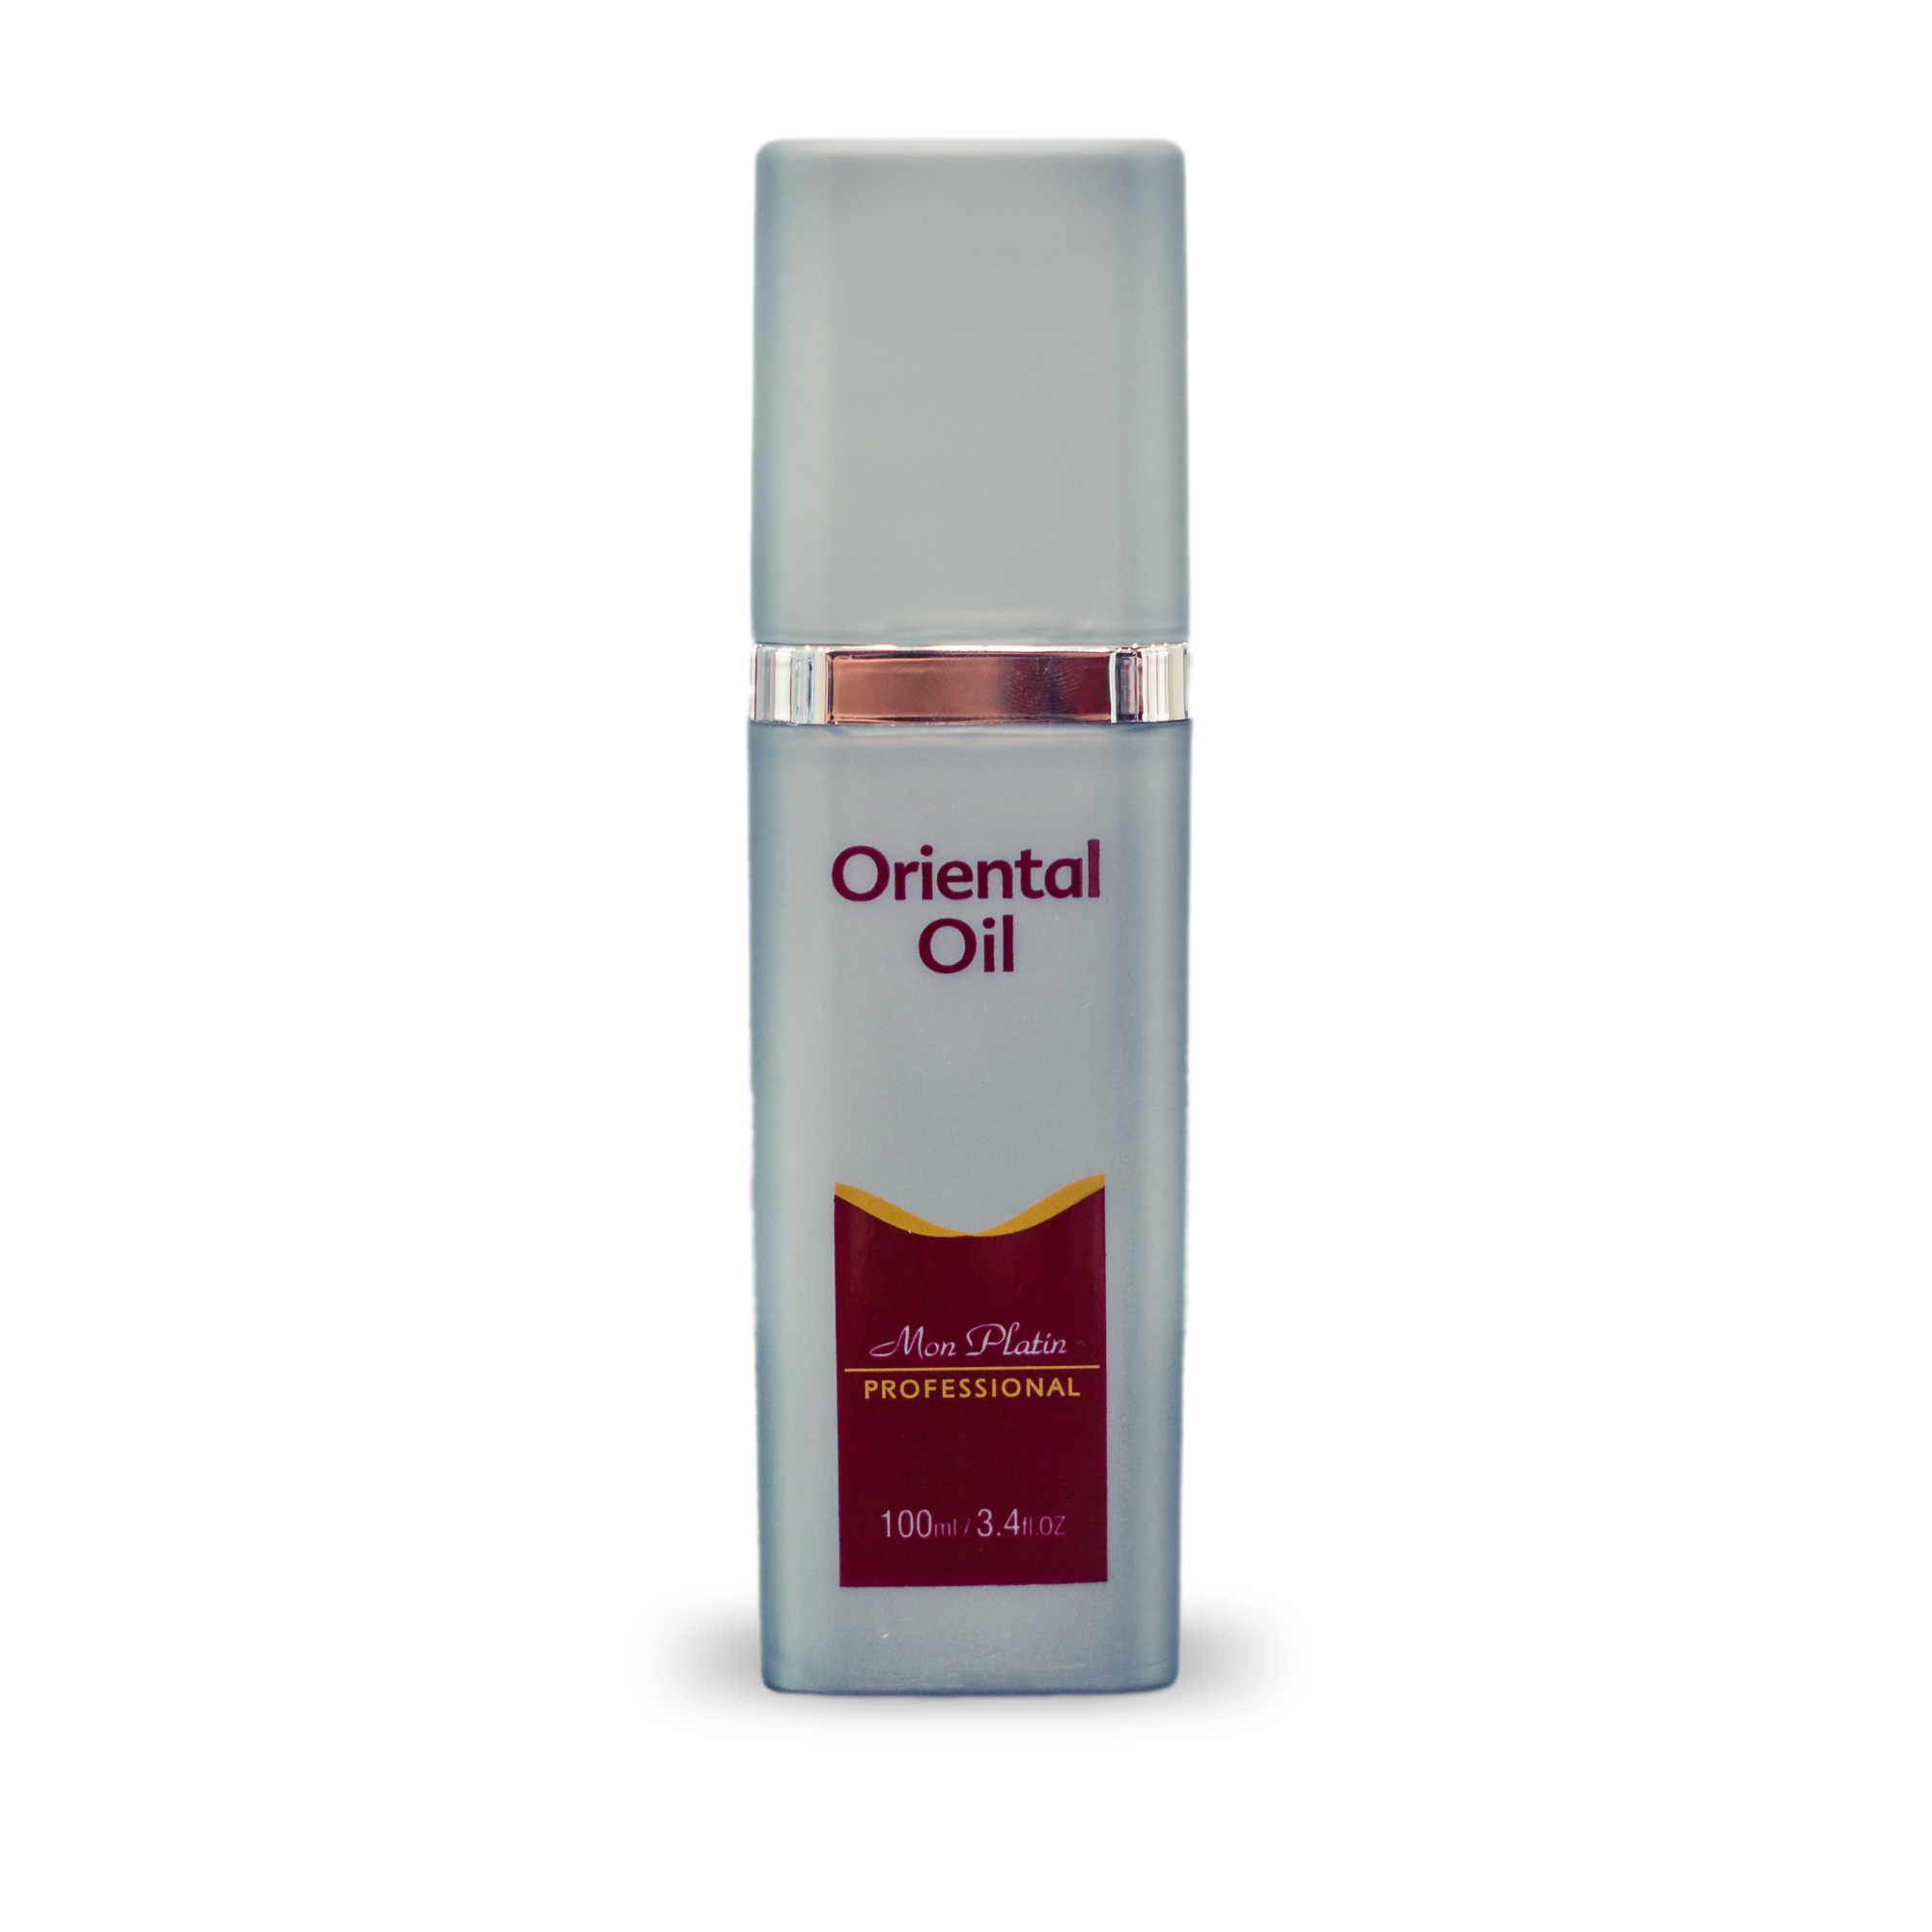 Восточное масло Mon Platin для питания и блеска волос Professional Oriental Oil, 100 мл shams natural oils парфюмерное масло oriental bazaar 10